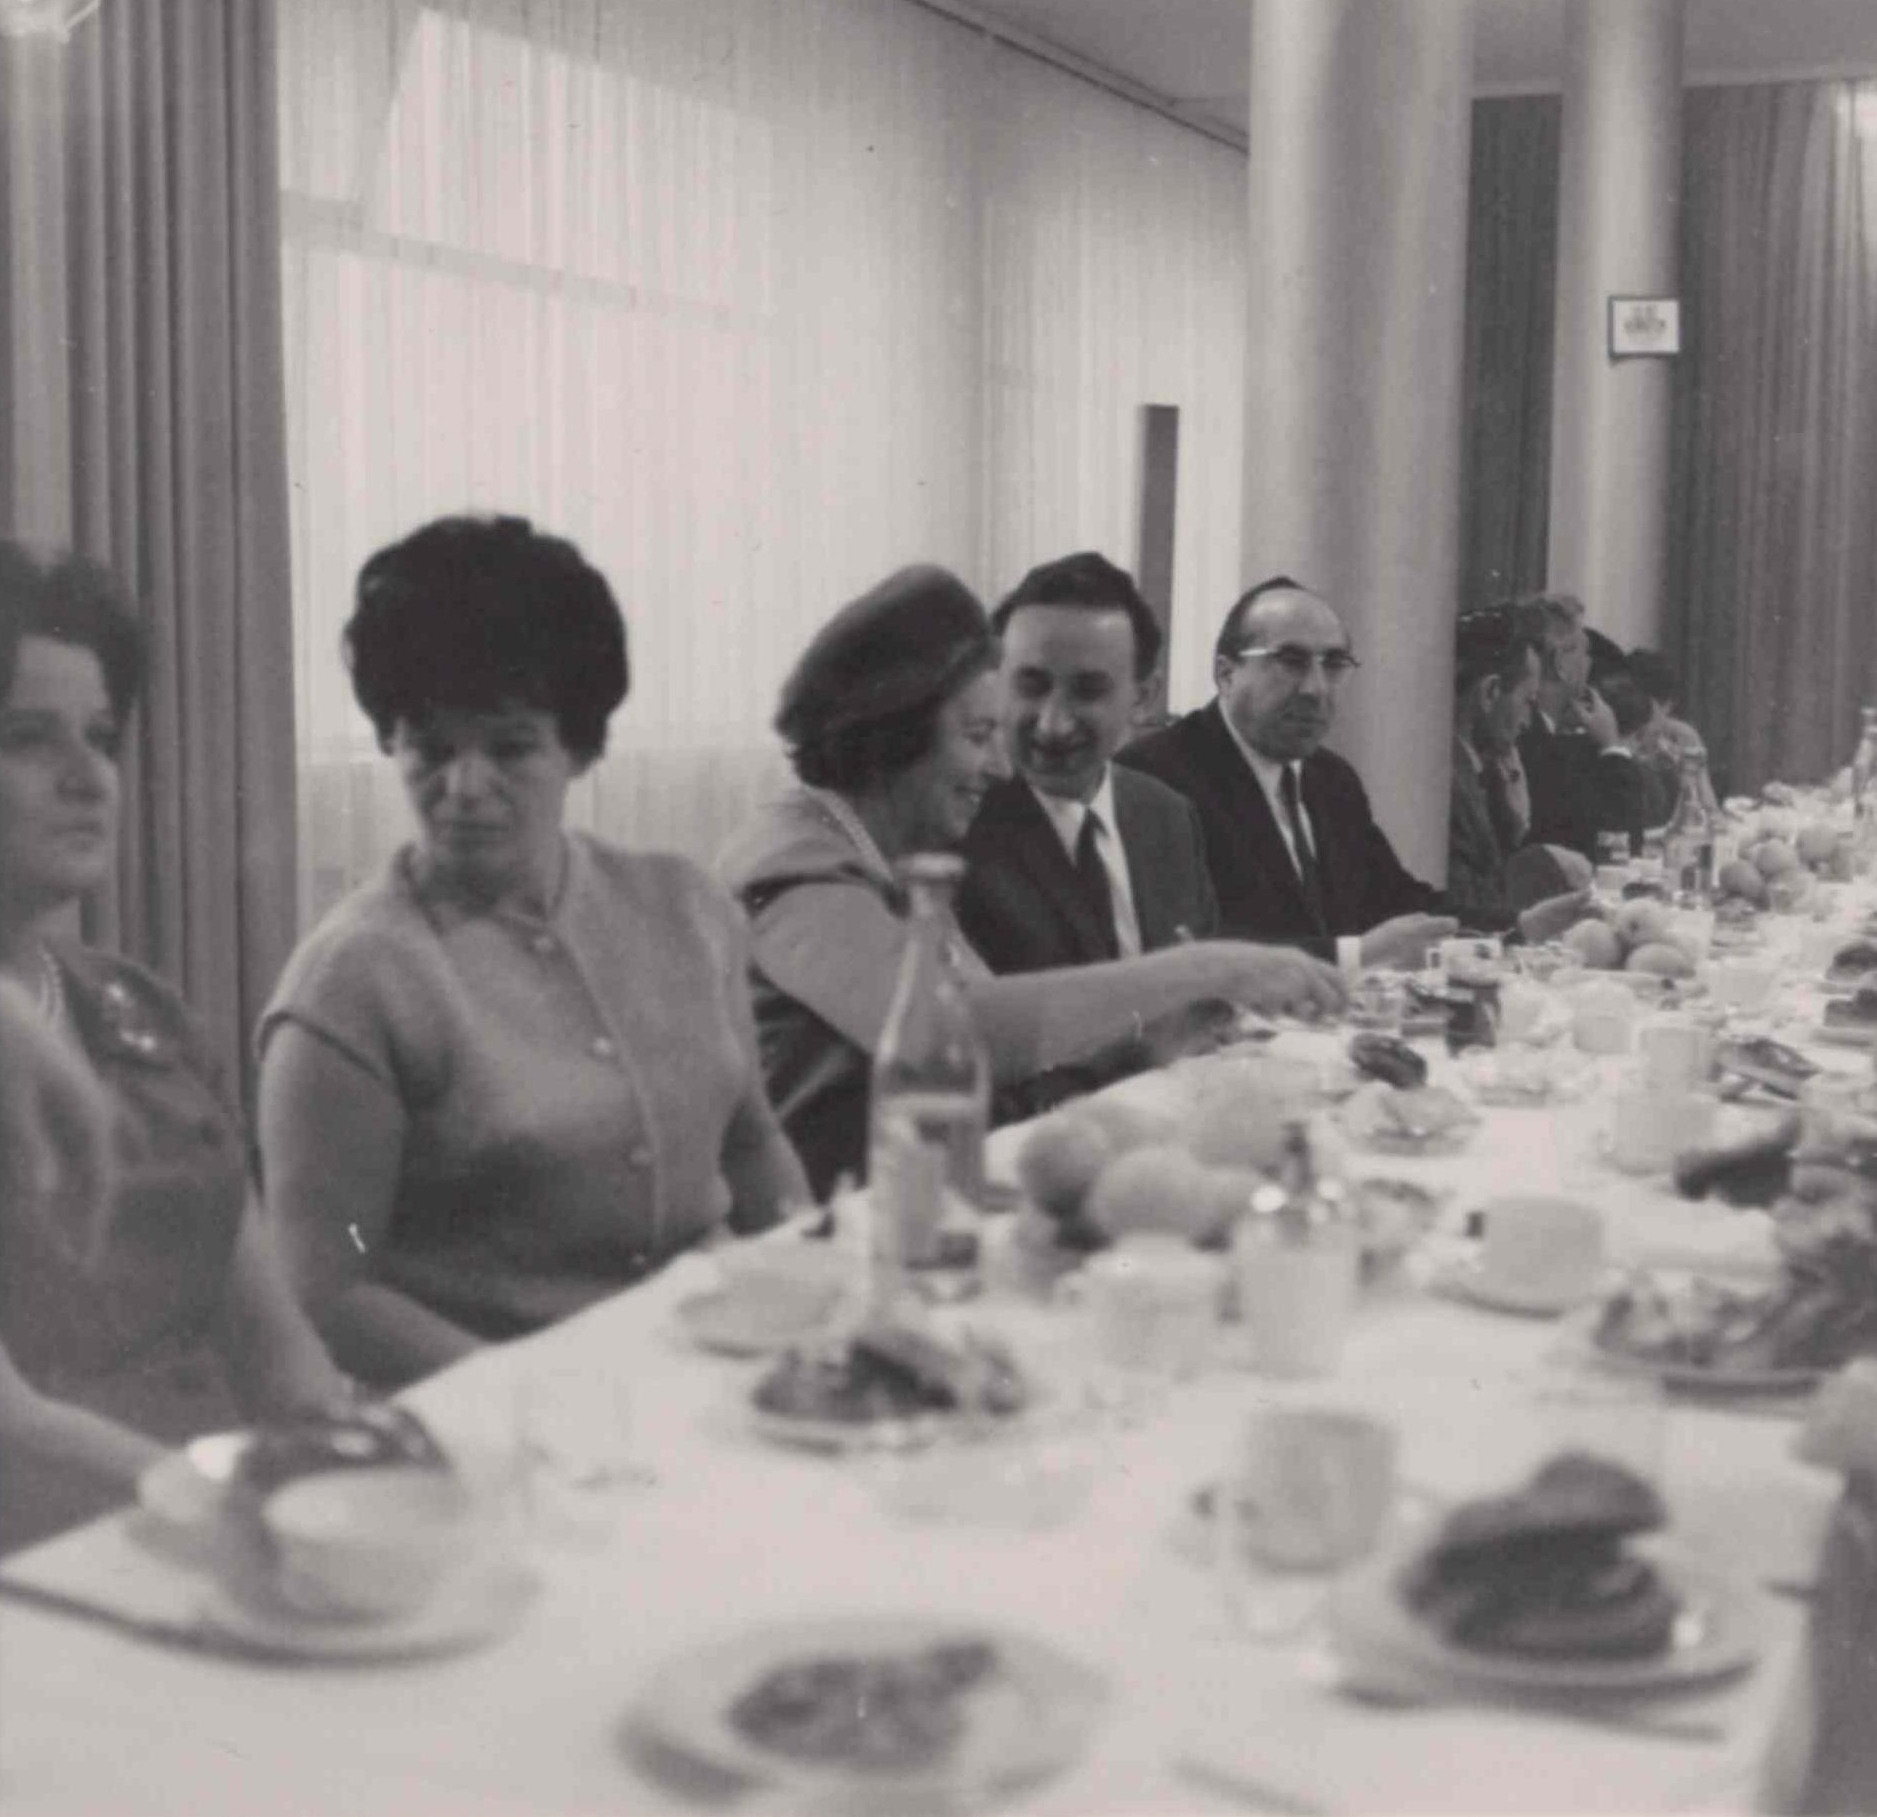 Événement communautaire dans les années 1960. Collection de la communauté juive de Wiesbaden